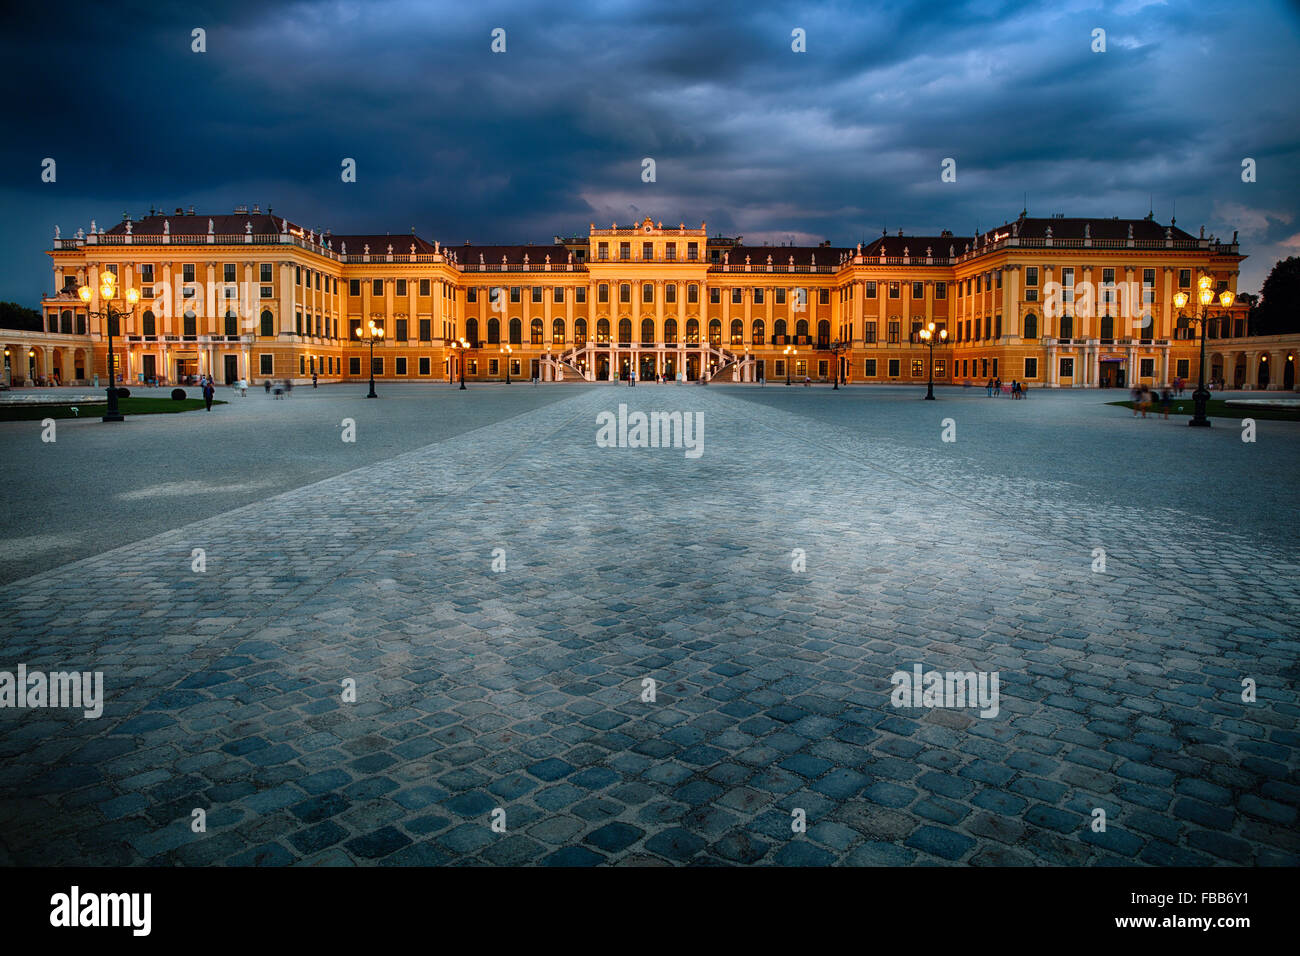 Portrait d'un palais baroque éclairé la nuit, Palais de Schonbrunn, Vienne, Autriche Banque D'Images